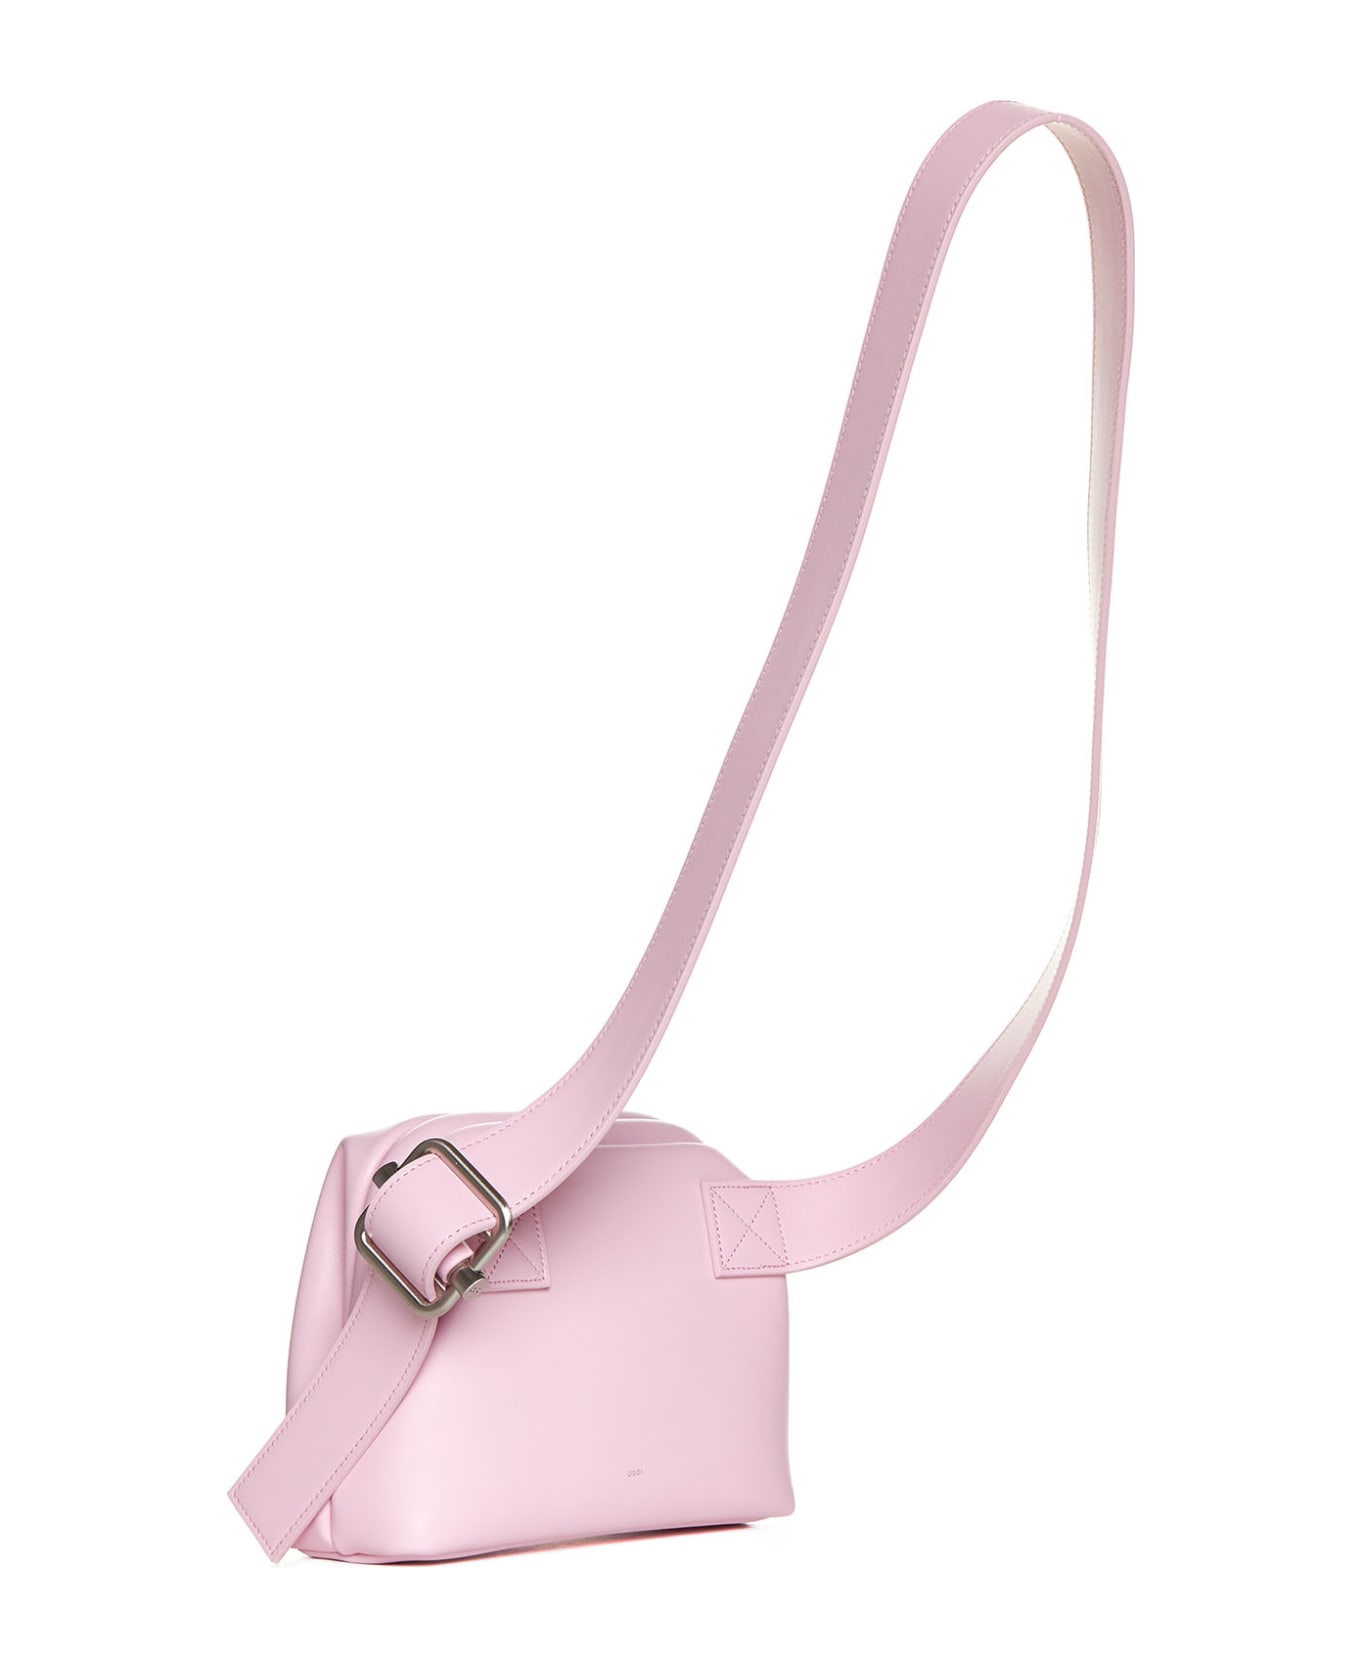 OSOI Shoulder Bag - Baby pink ベルトバッグ